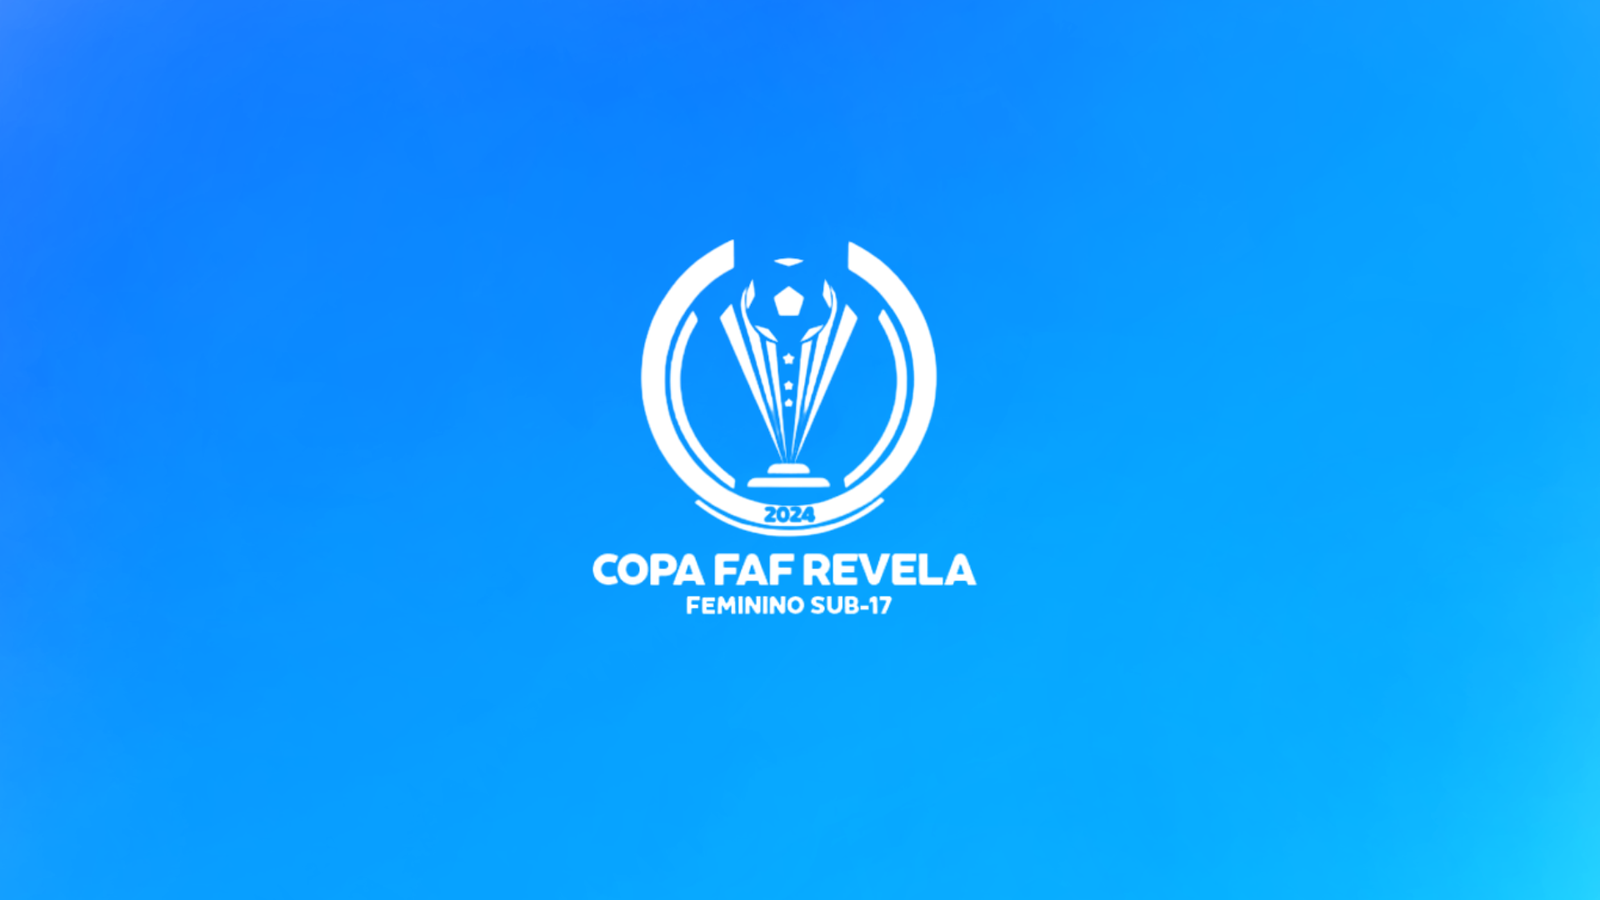 FAF Anuncia a Copa FAF Revela: Primeira Competição de Base Feminina